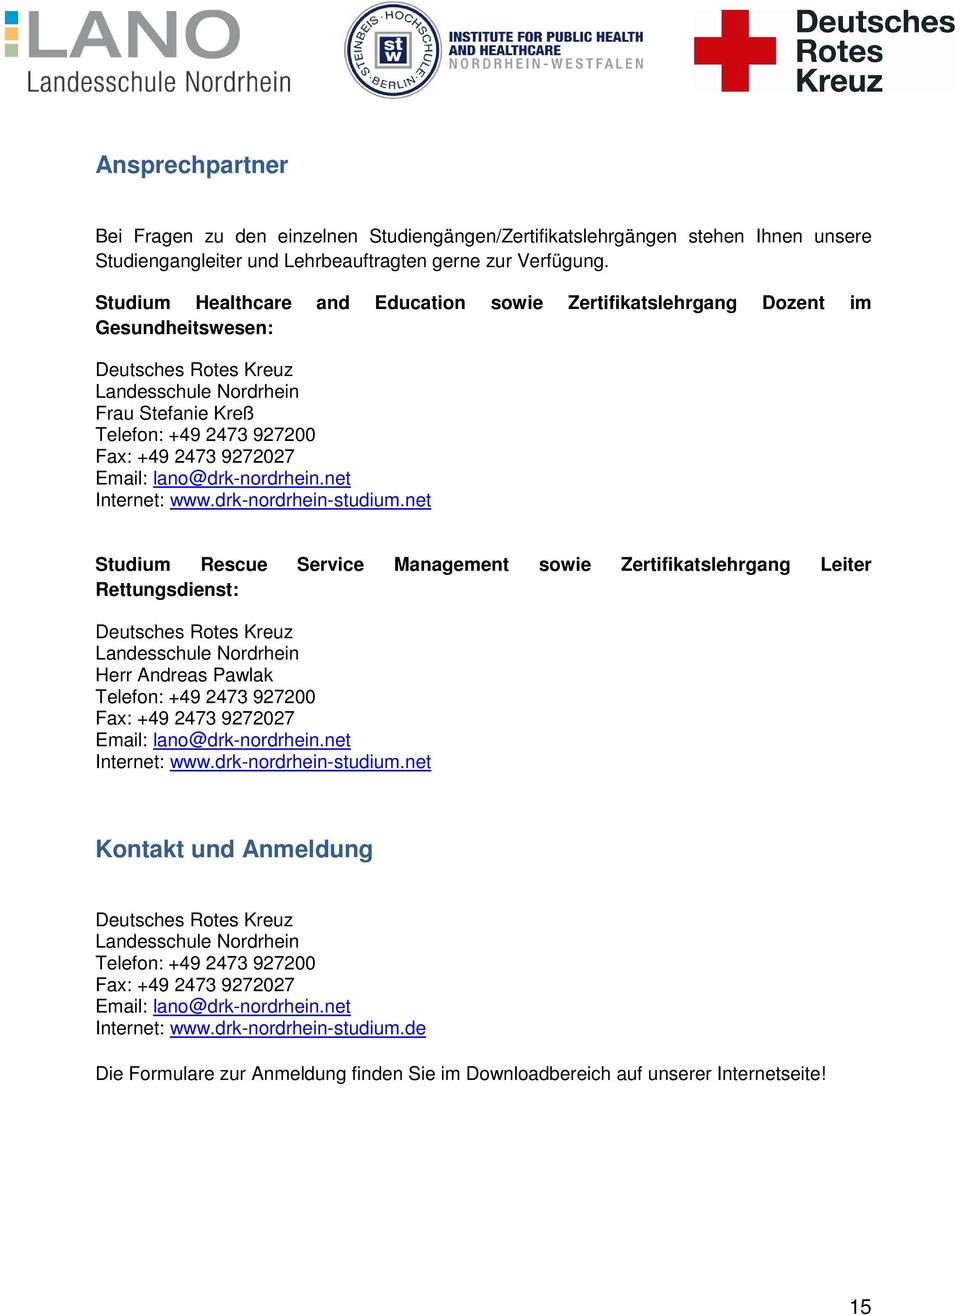 Email: lano@drk-nordrhein.net Internet: www.drk-nordrhein-studium.